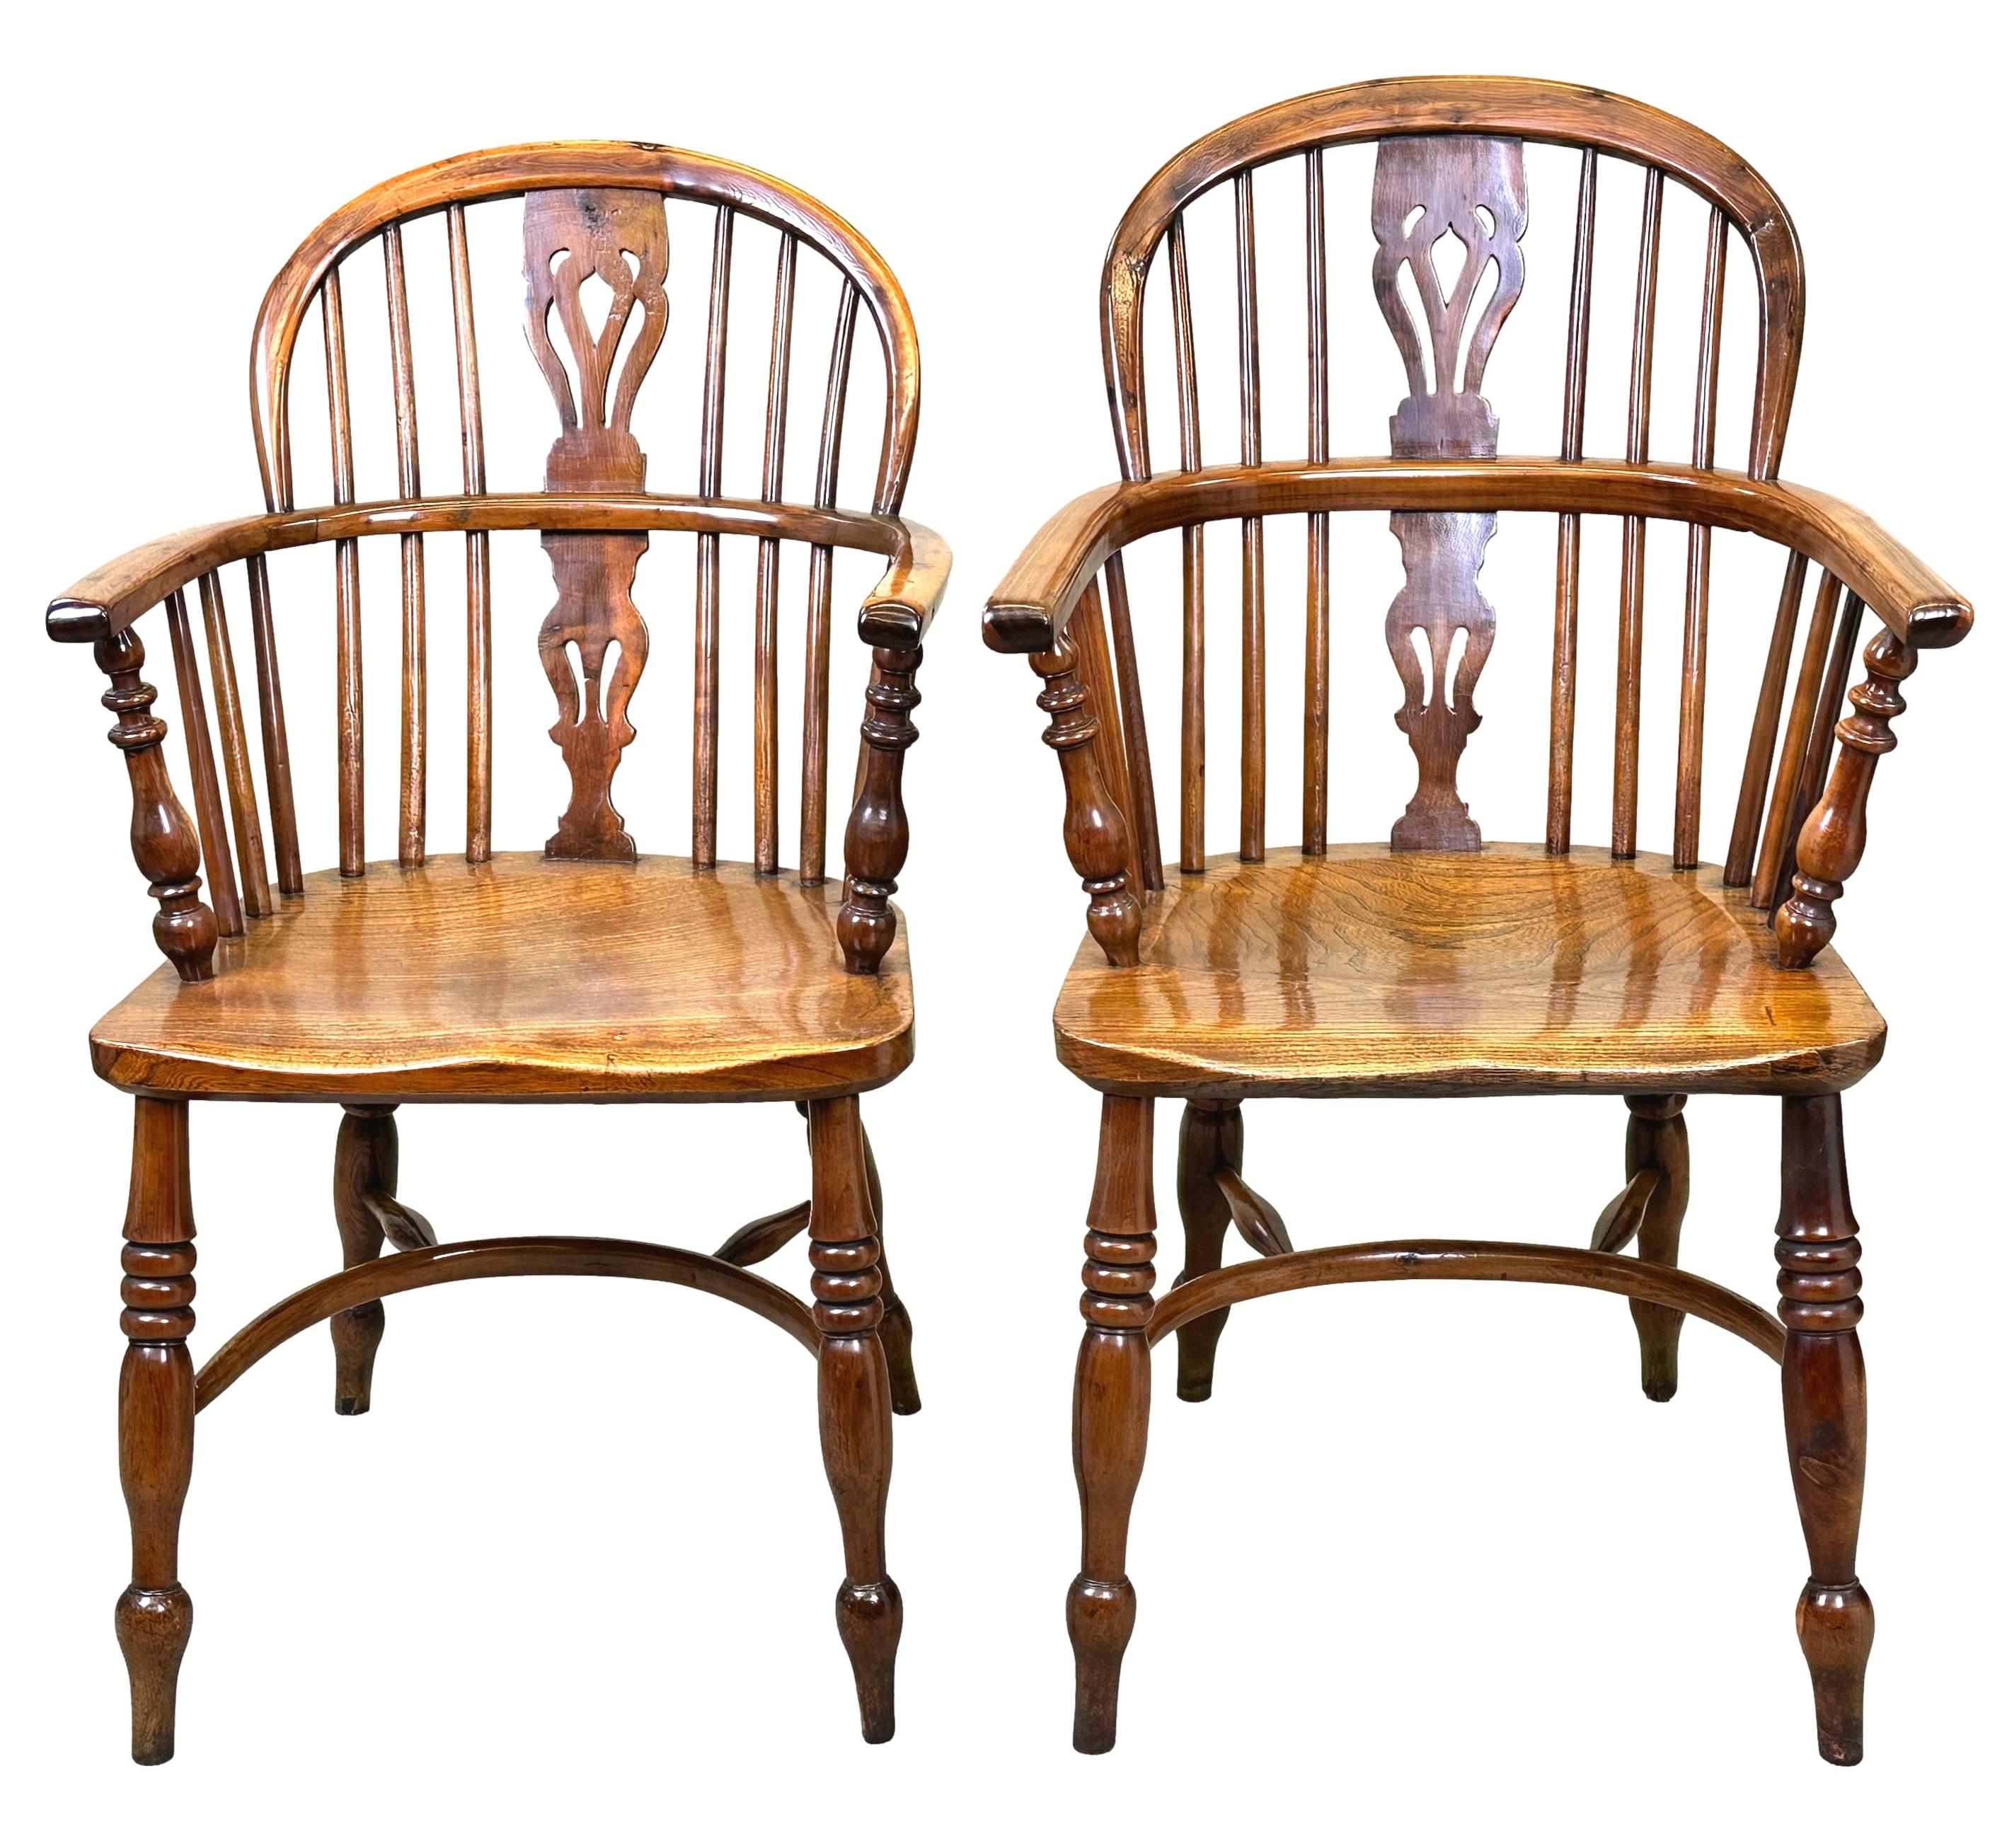 Charmant et très attrayant ensemble assorti de six fauteuils de cuisine Windsor en bois d'if à dossier bas, avec des éclisses percées extrêmement bien figurées et des supports tournés aux dossiers incurvés, sur des sièges en forme reposant sur